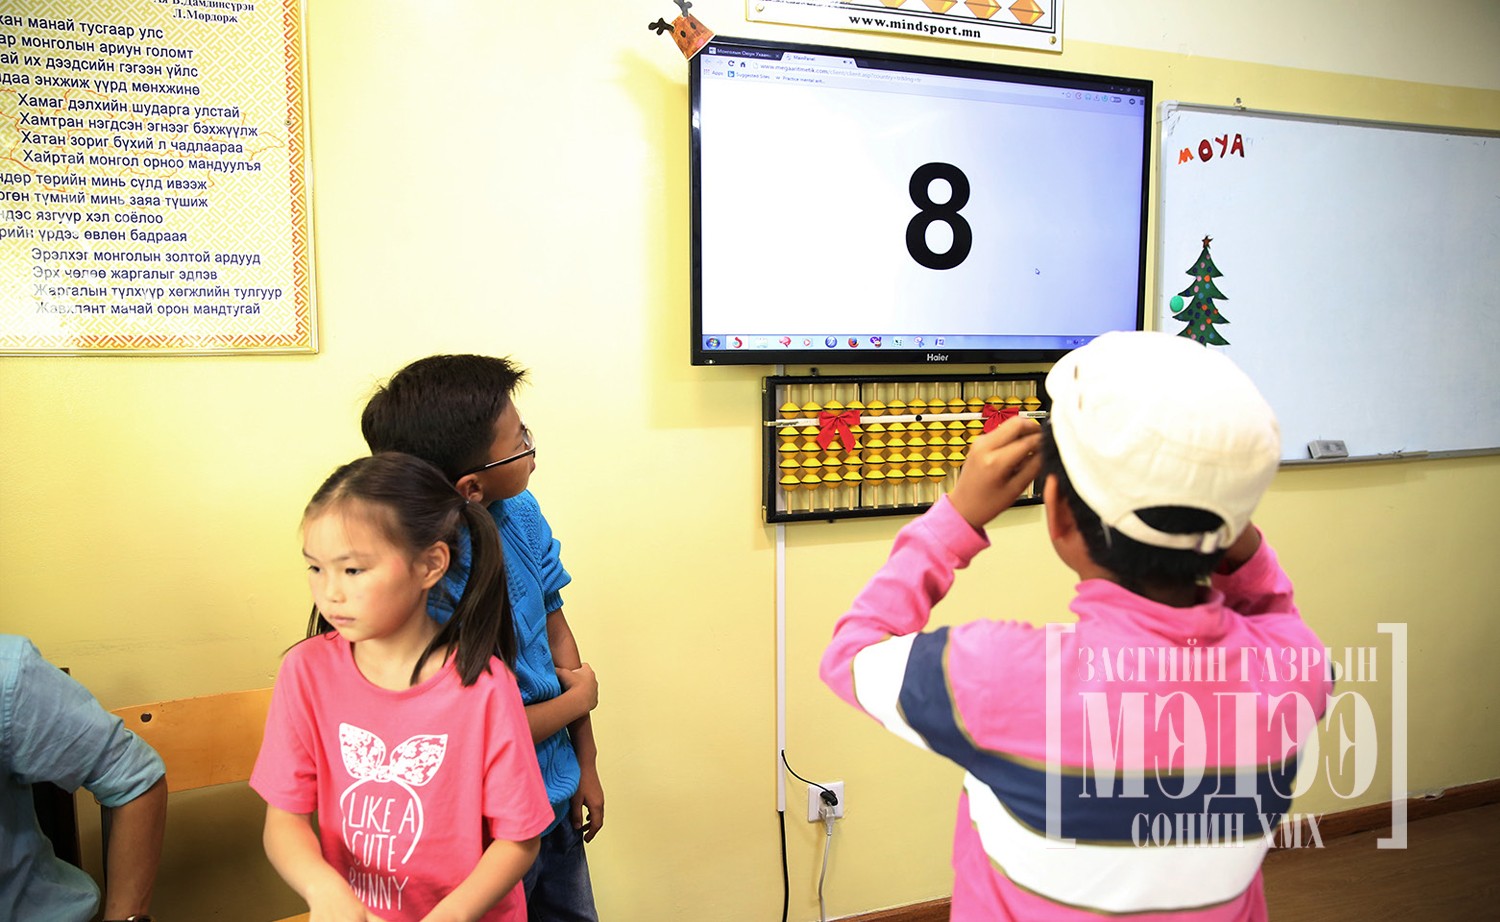 Найман оронтой тоог найман оронтой тоогоор үржүүлэн, 16 оронтой хариу гаргах чадварыг ангийн бүх хүүхэд эзэмшжээ.